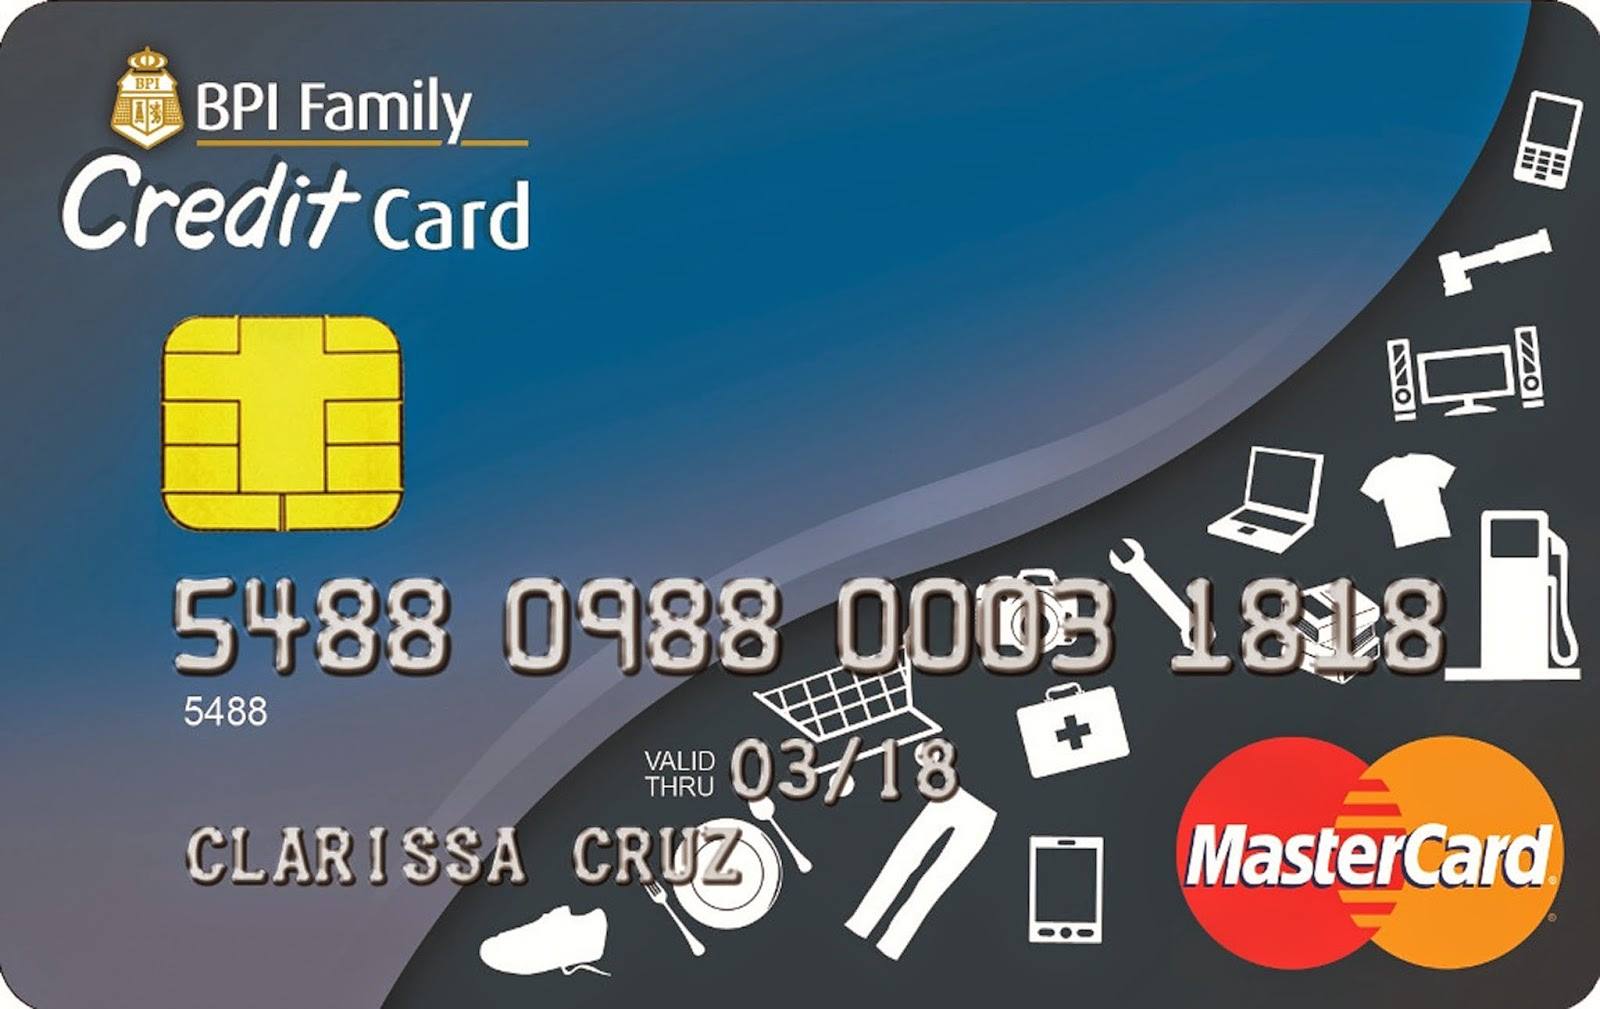 بطاقات ماستر كارد مسبقة الدفع مجانا والفرق بينها وبين بطاقة الائتمان